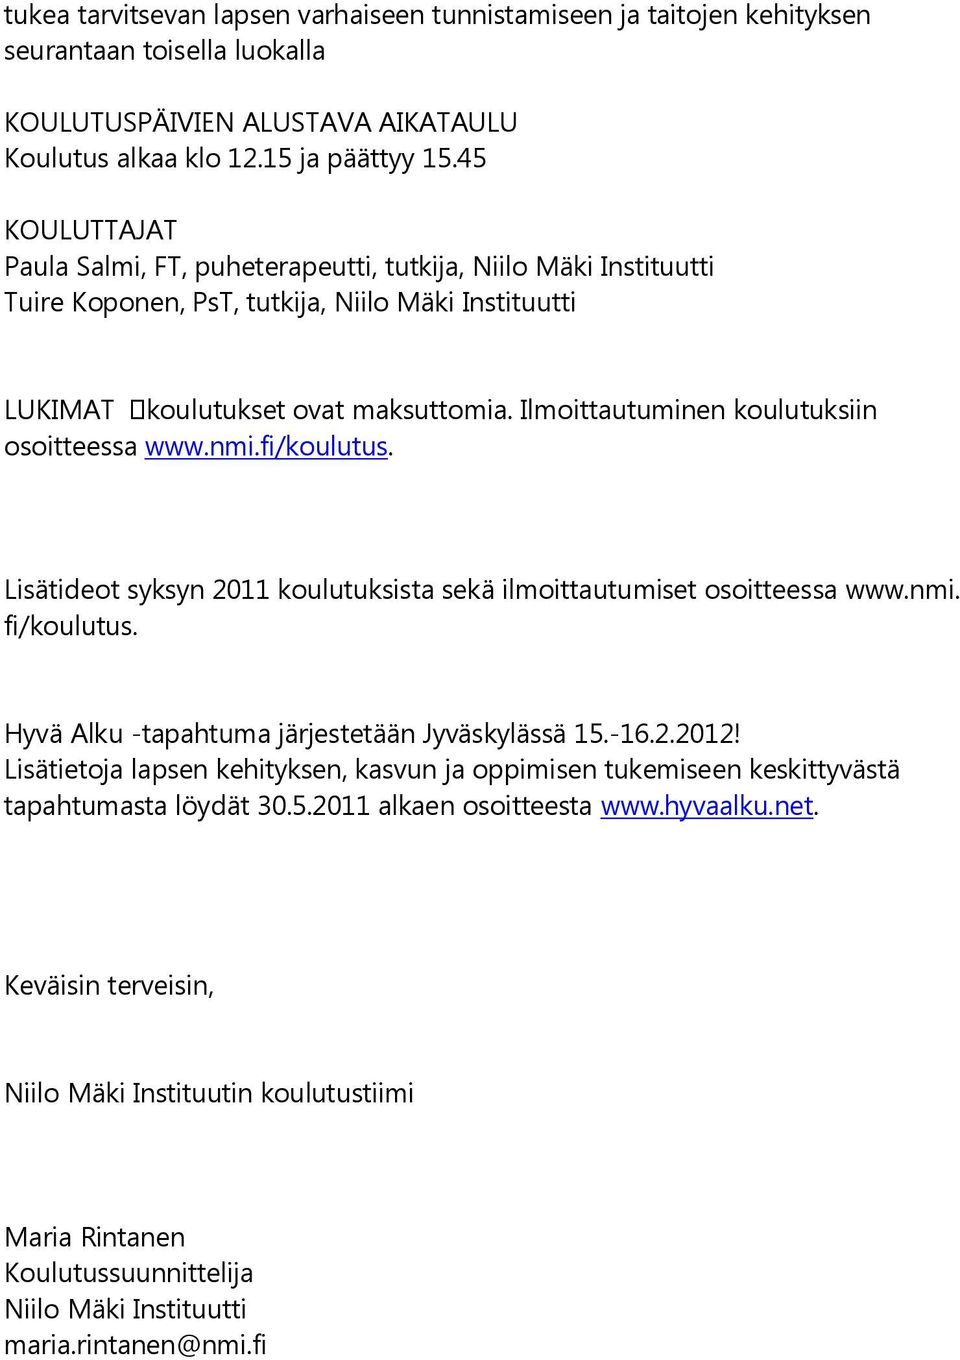 Ilmoittautuminen koulutuksiin osoitteessa www.nmi.fi/koulutus. Lisätideot syksyn 2011 koulutuksista sekä ilmoittautumiset osoitteessa www.nmi. fi/koulutus.